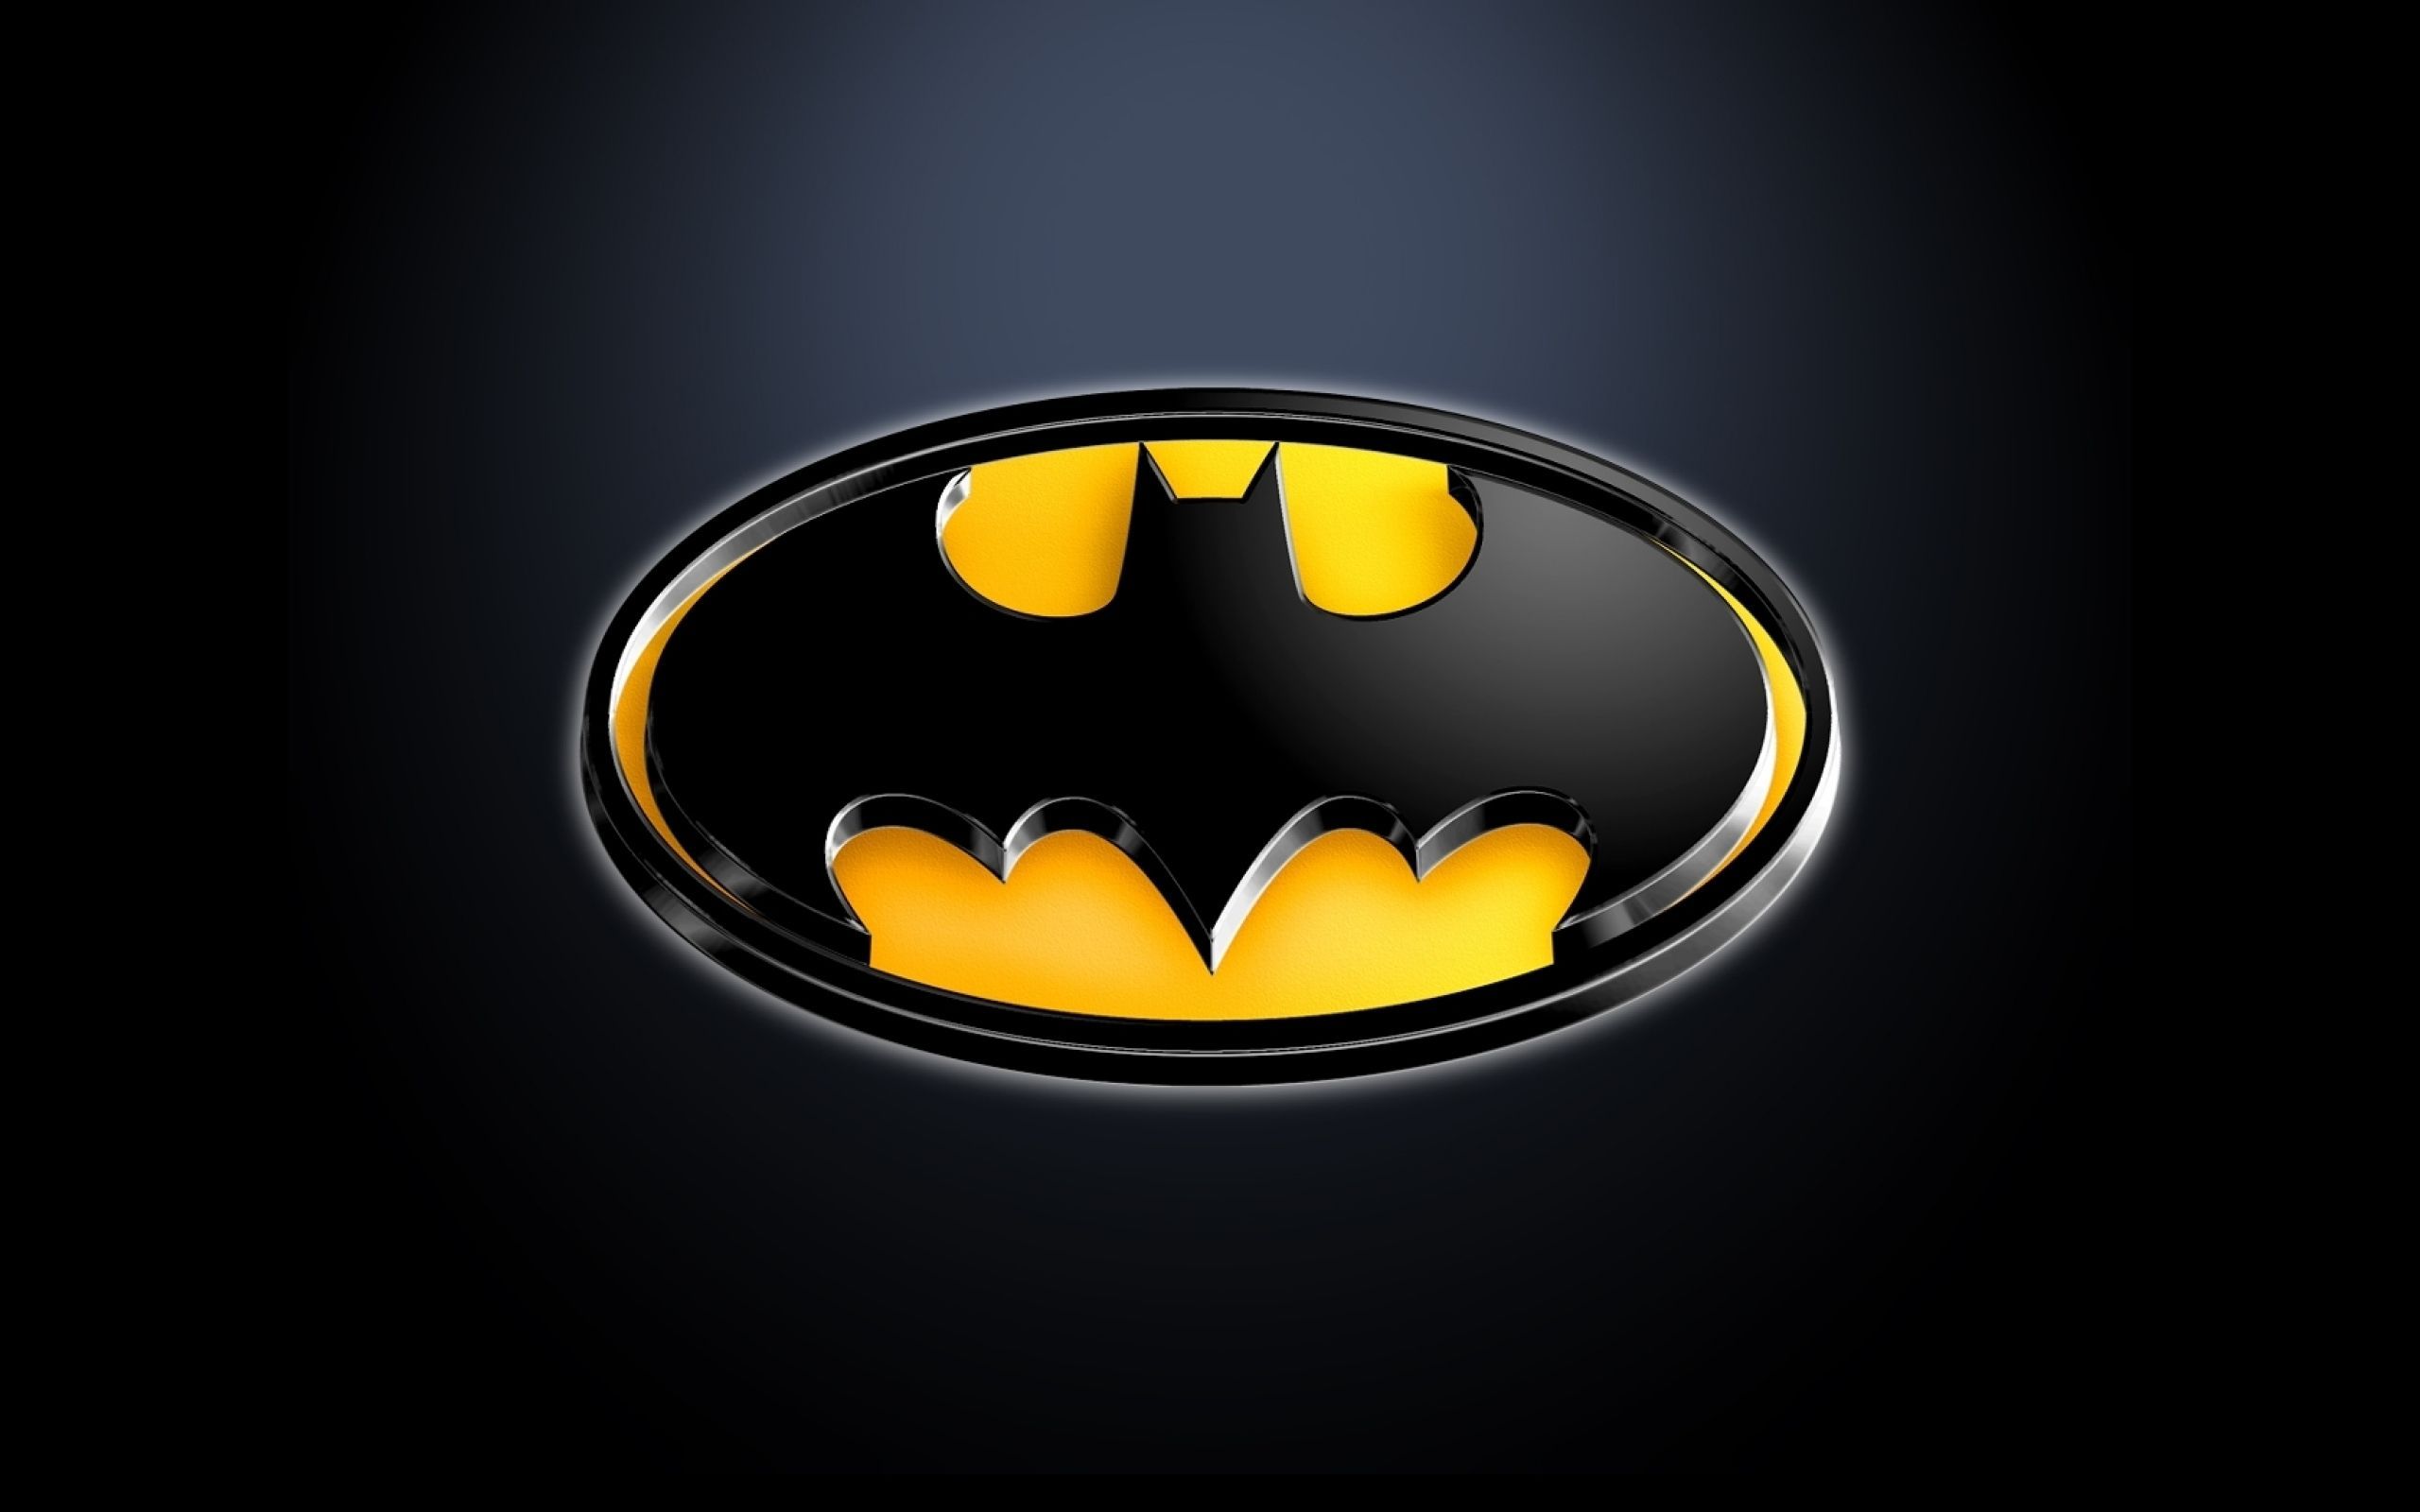 Fondos de pantalla del logo de Batman - FondosMil